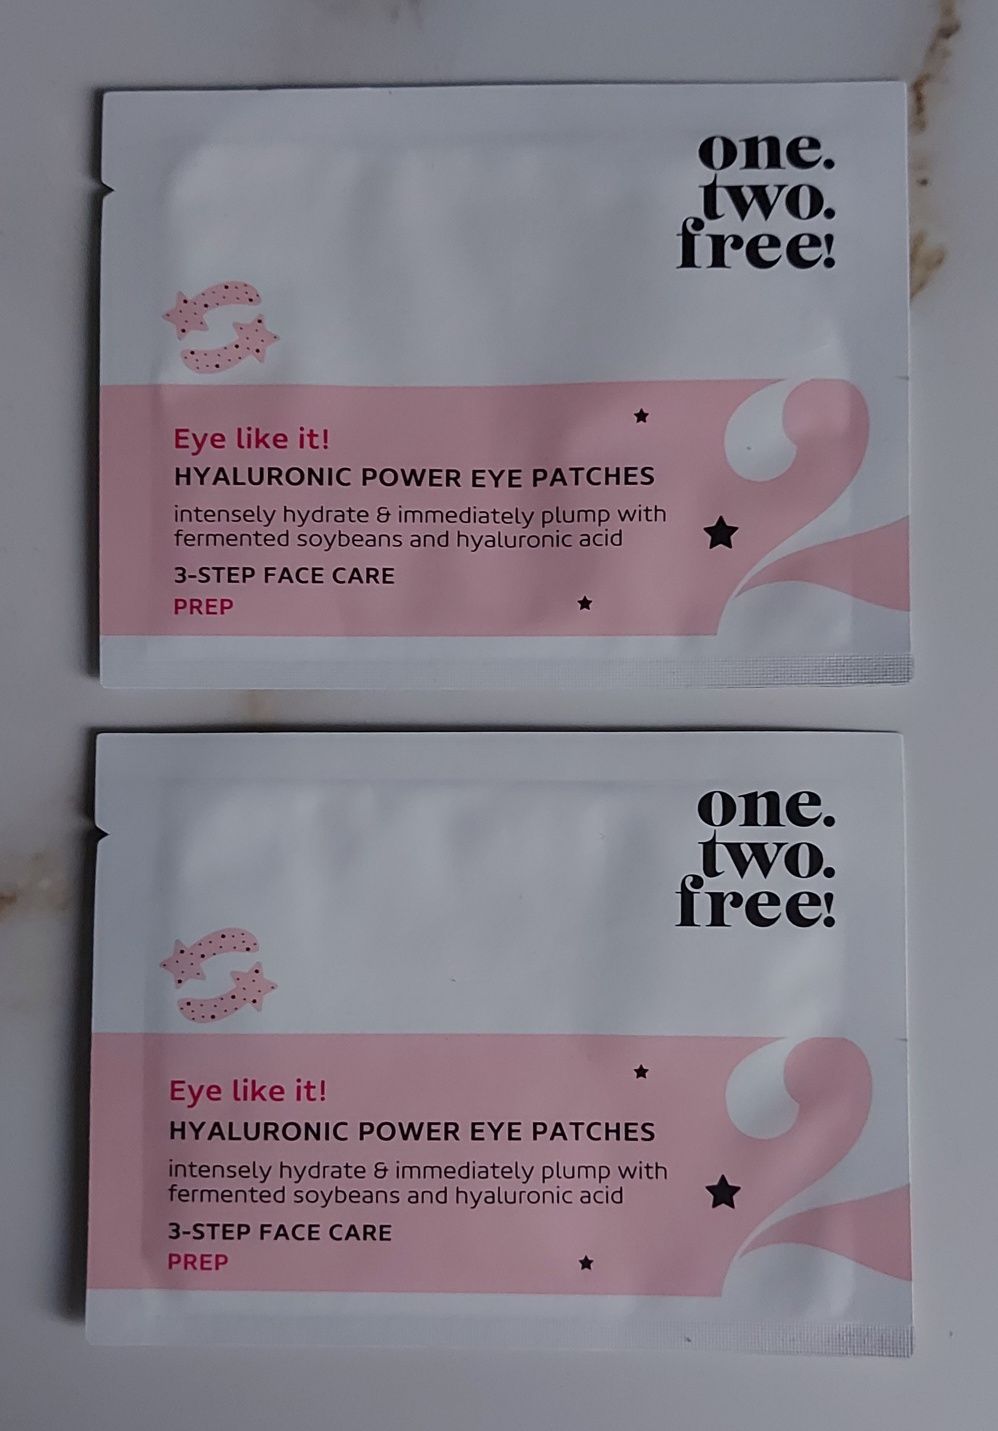 2 × Płatki pod oczy one.two.free! Hyaluronic power eye paches